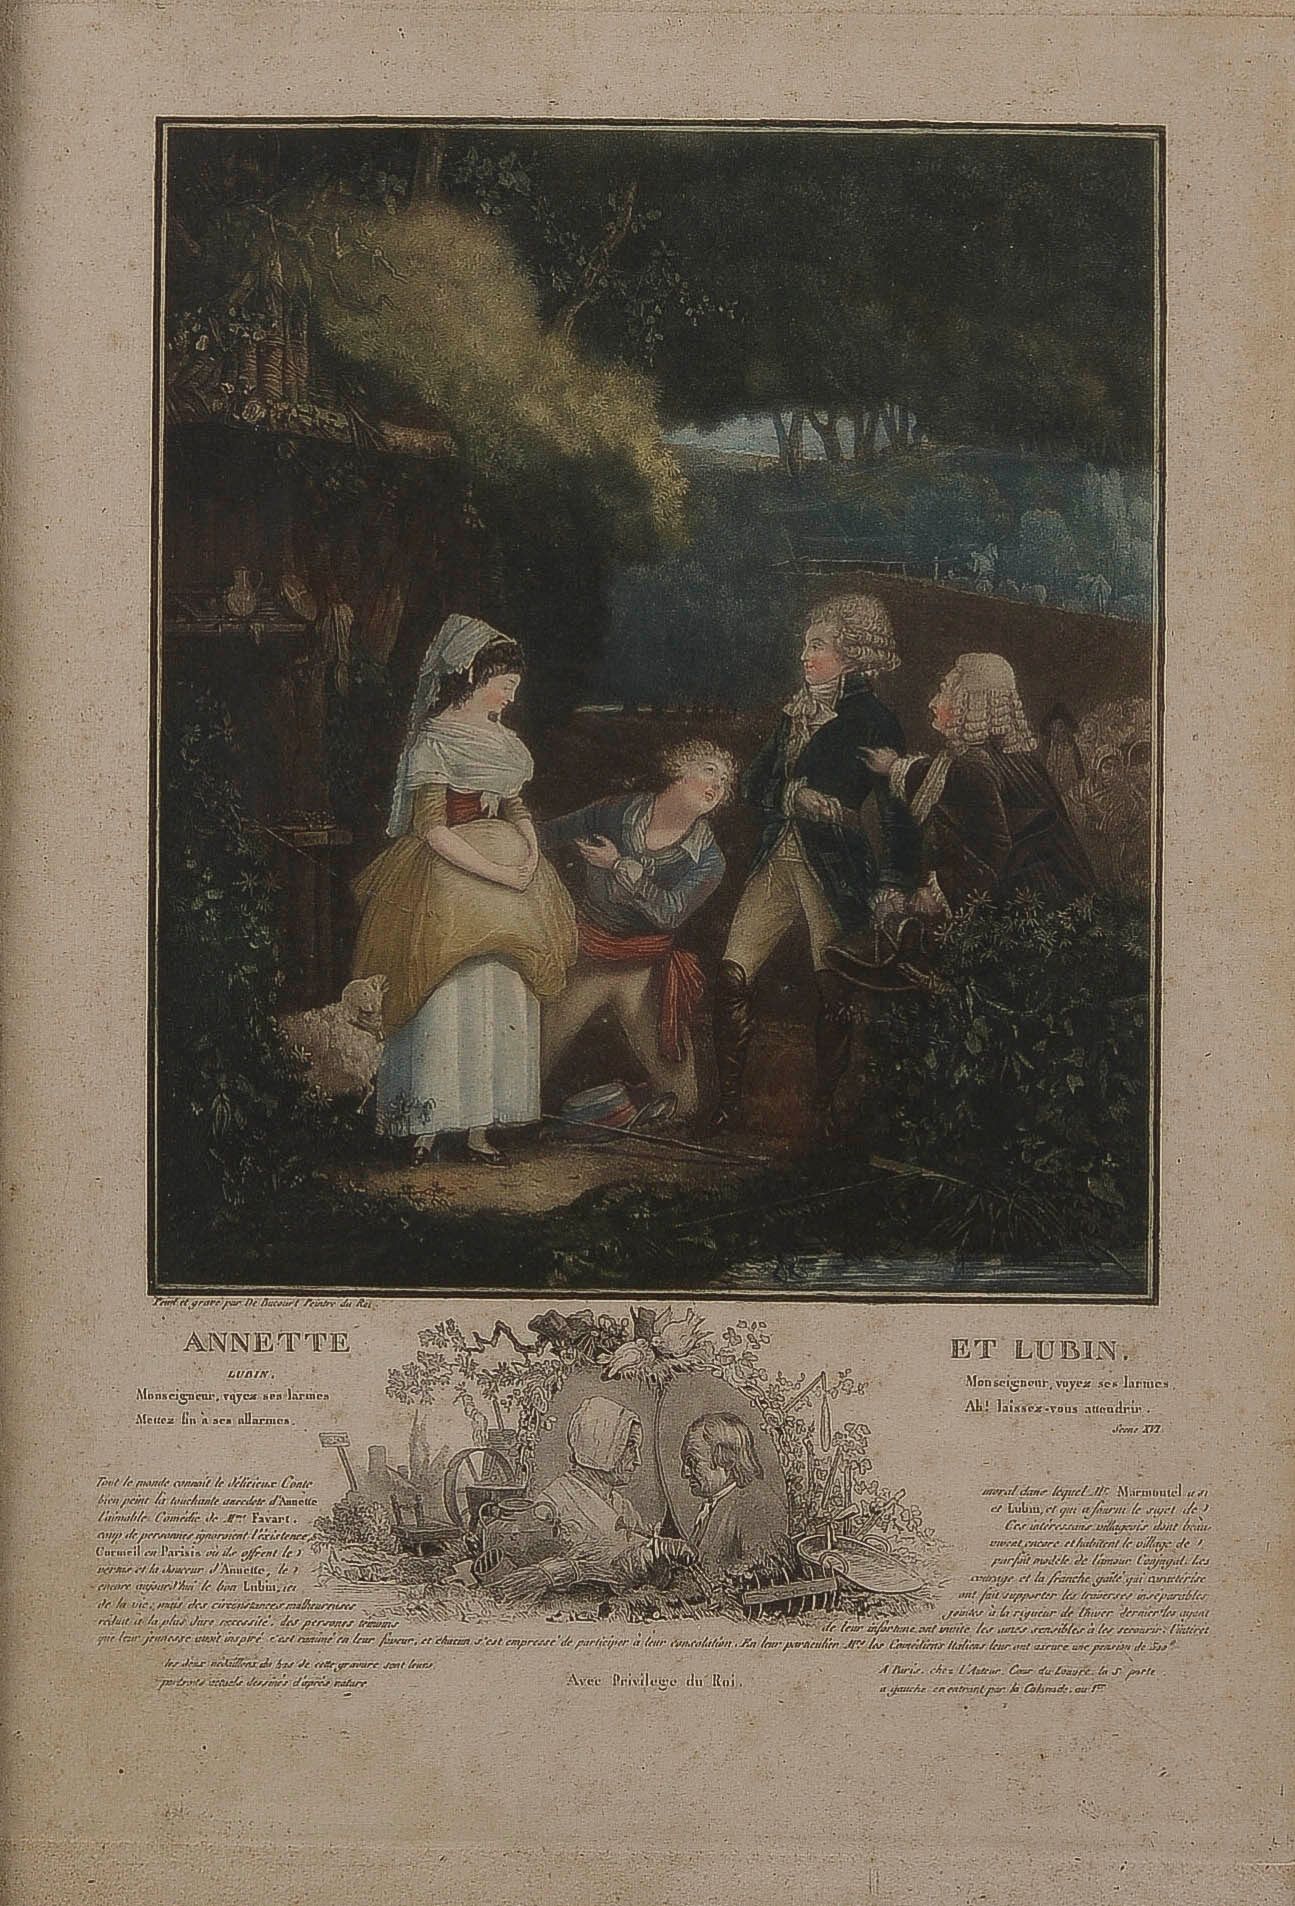 Null 菲利贝尔-路易-德布库尔 (1755-1832)

安妮特和卢宾。178

彩色水粉画

费奈尔22

后期印刷品的证明

27 x 22.8厘米（4&hellip;